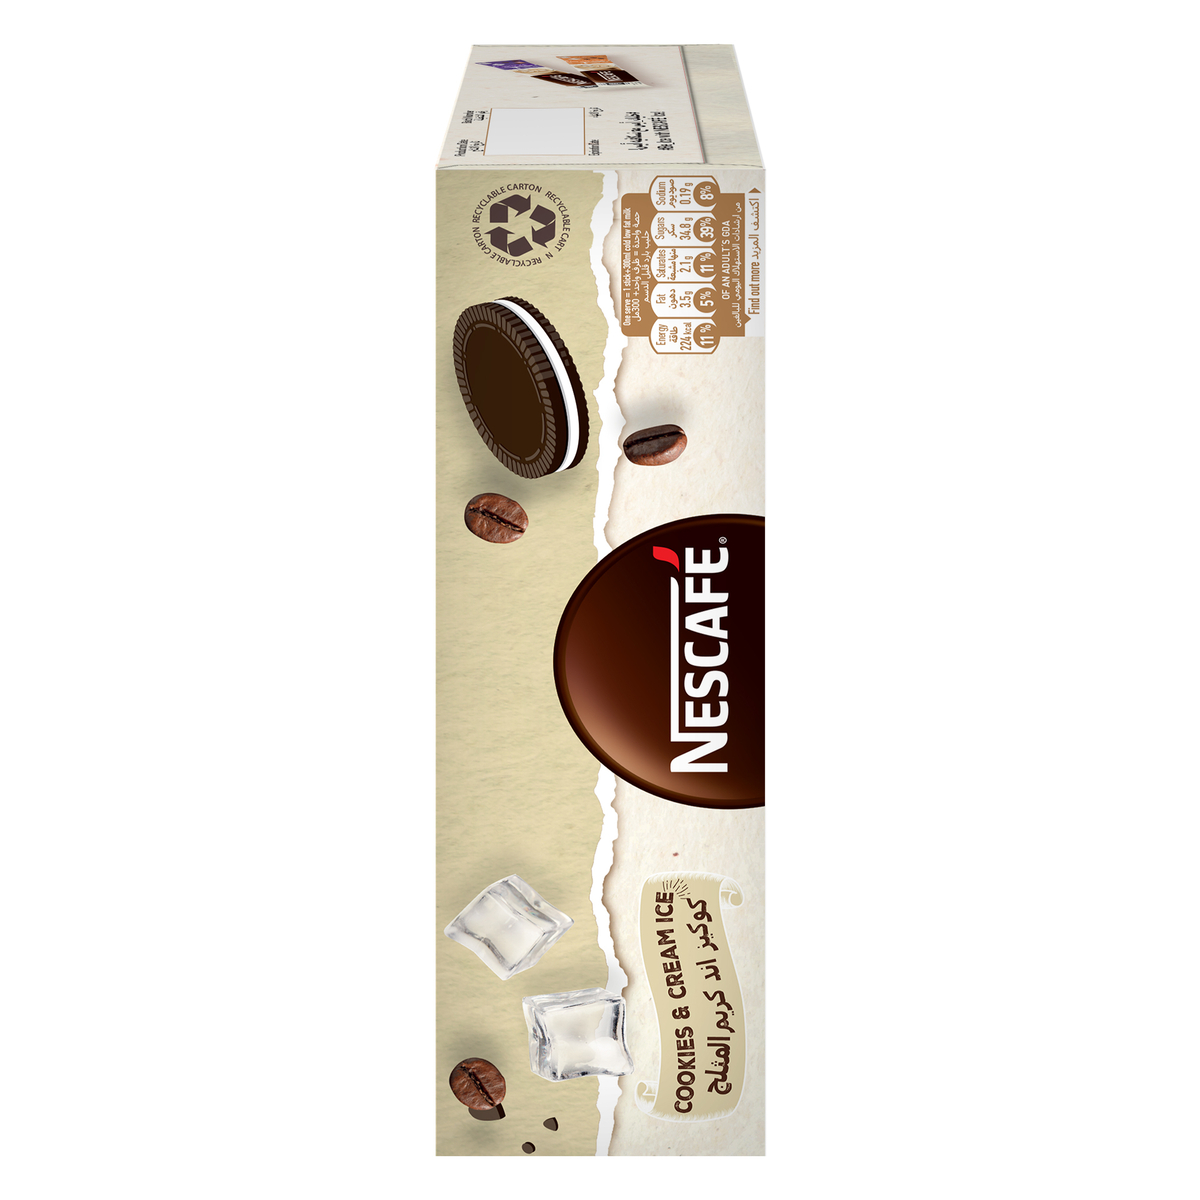 Nescafe Cookies & Cream Ice Coffee 10 x 25 g